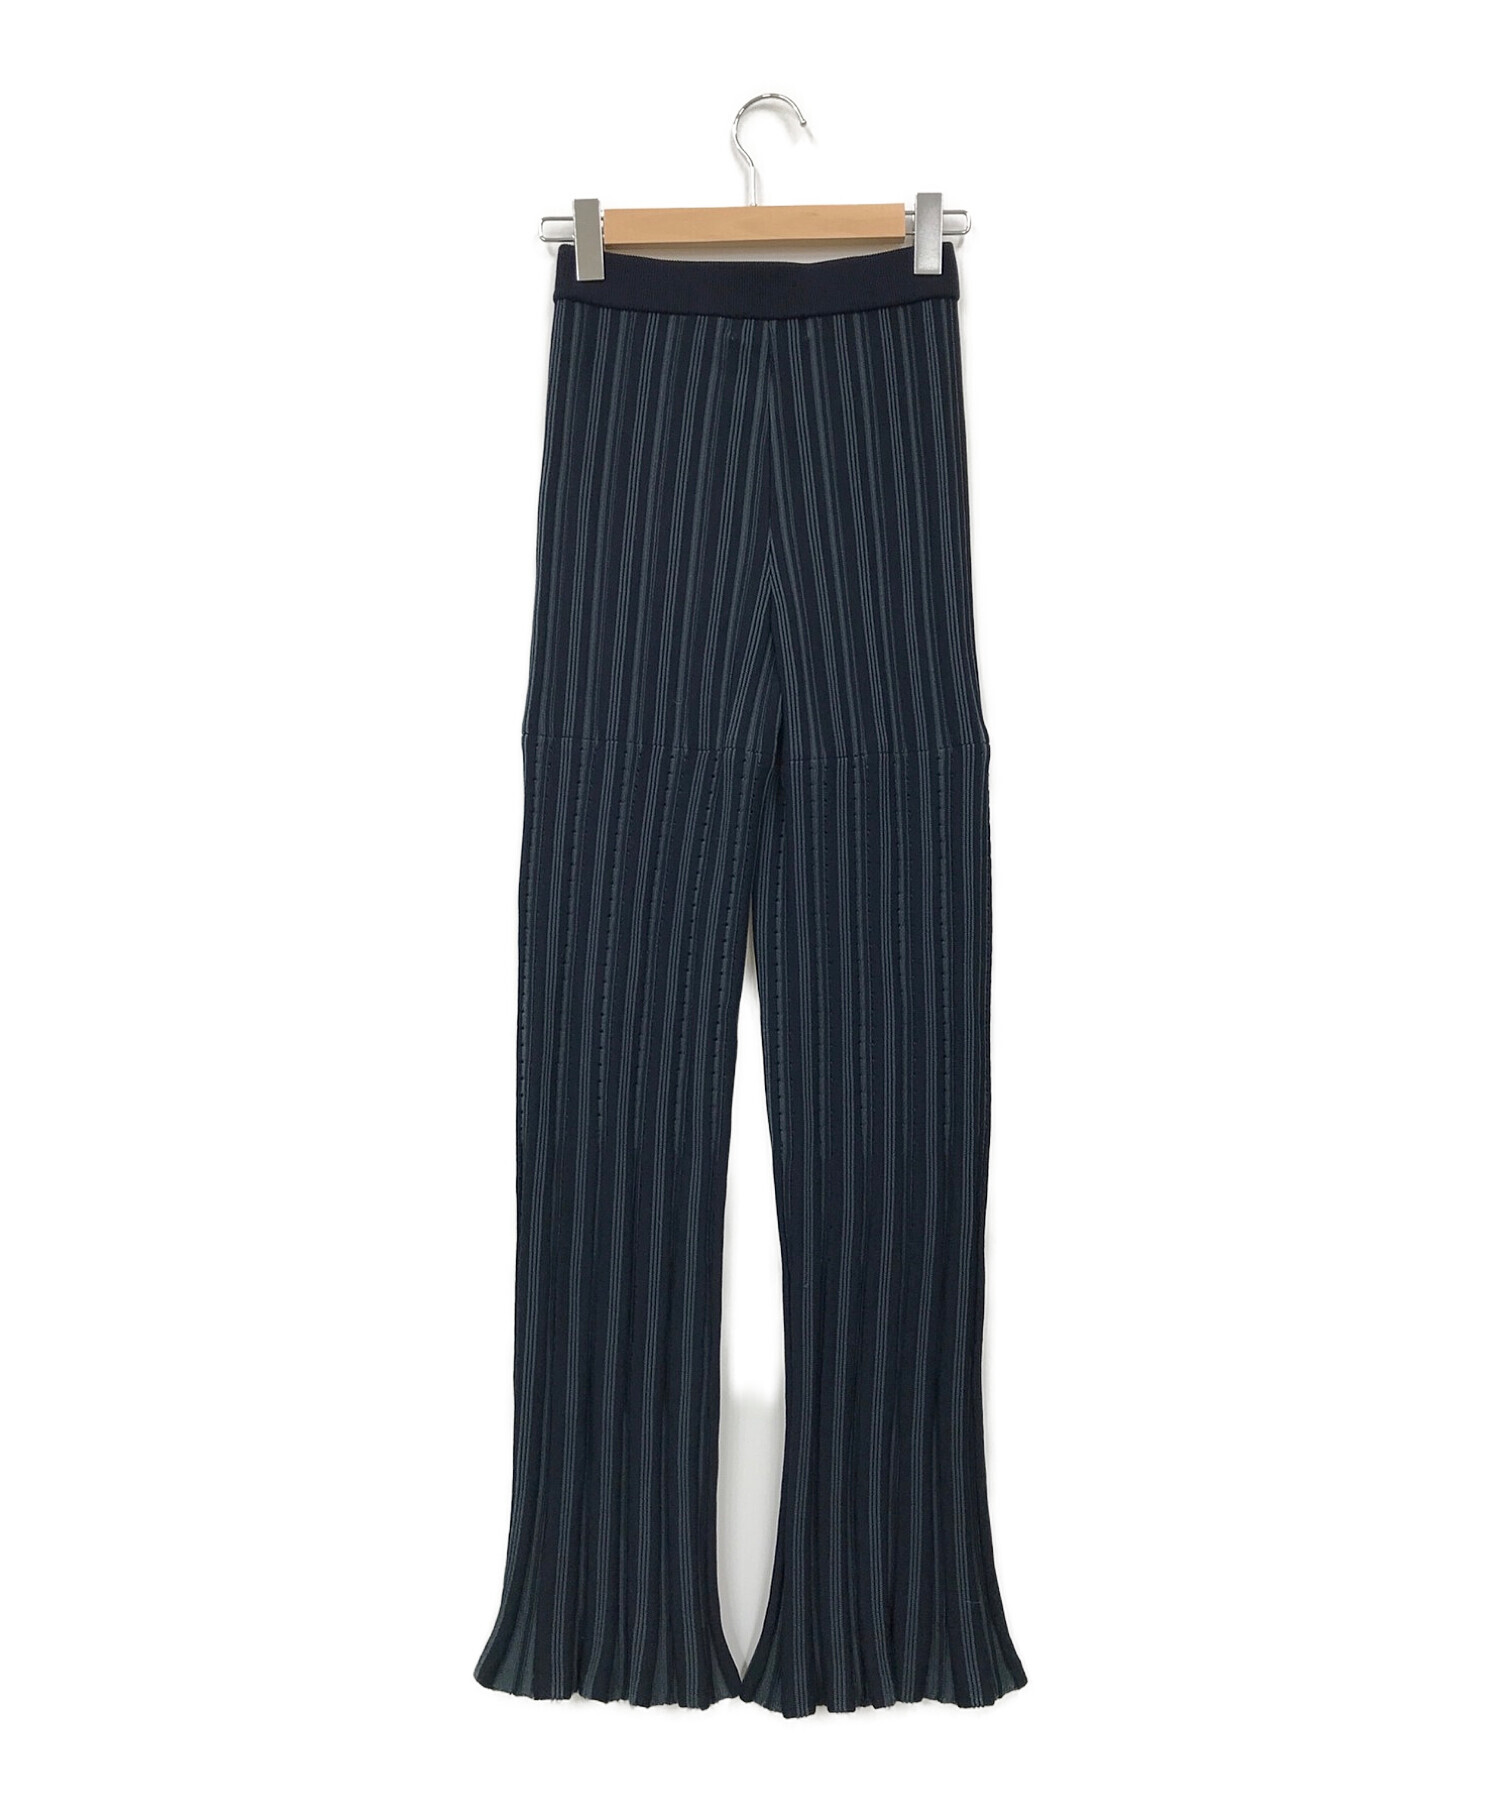 ルシェルブルー Random Stripe Knit Pants ニットパンツ